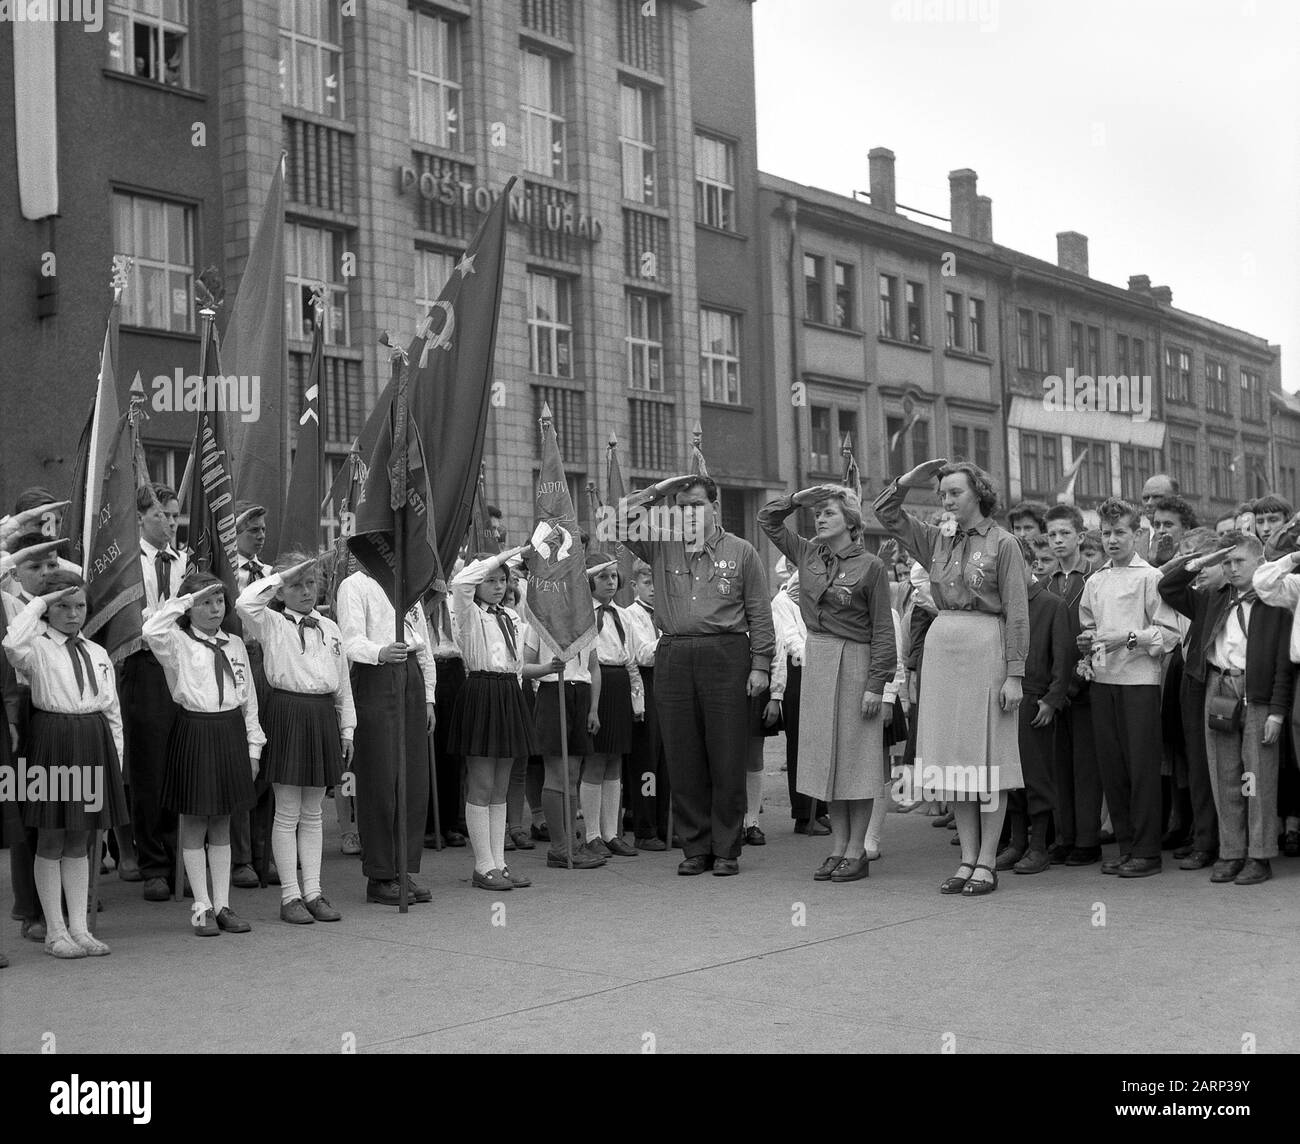 Pionier-Kongress in Nachod, Tschechien (Tschechoslowakei), Mai 1959. Stolze Mädchen und Jungen mit Fahnen grüßen - Zeremonie auf dem Platz der Stadt. Stockfoto